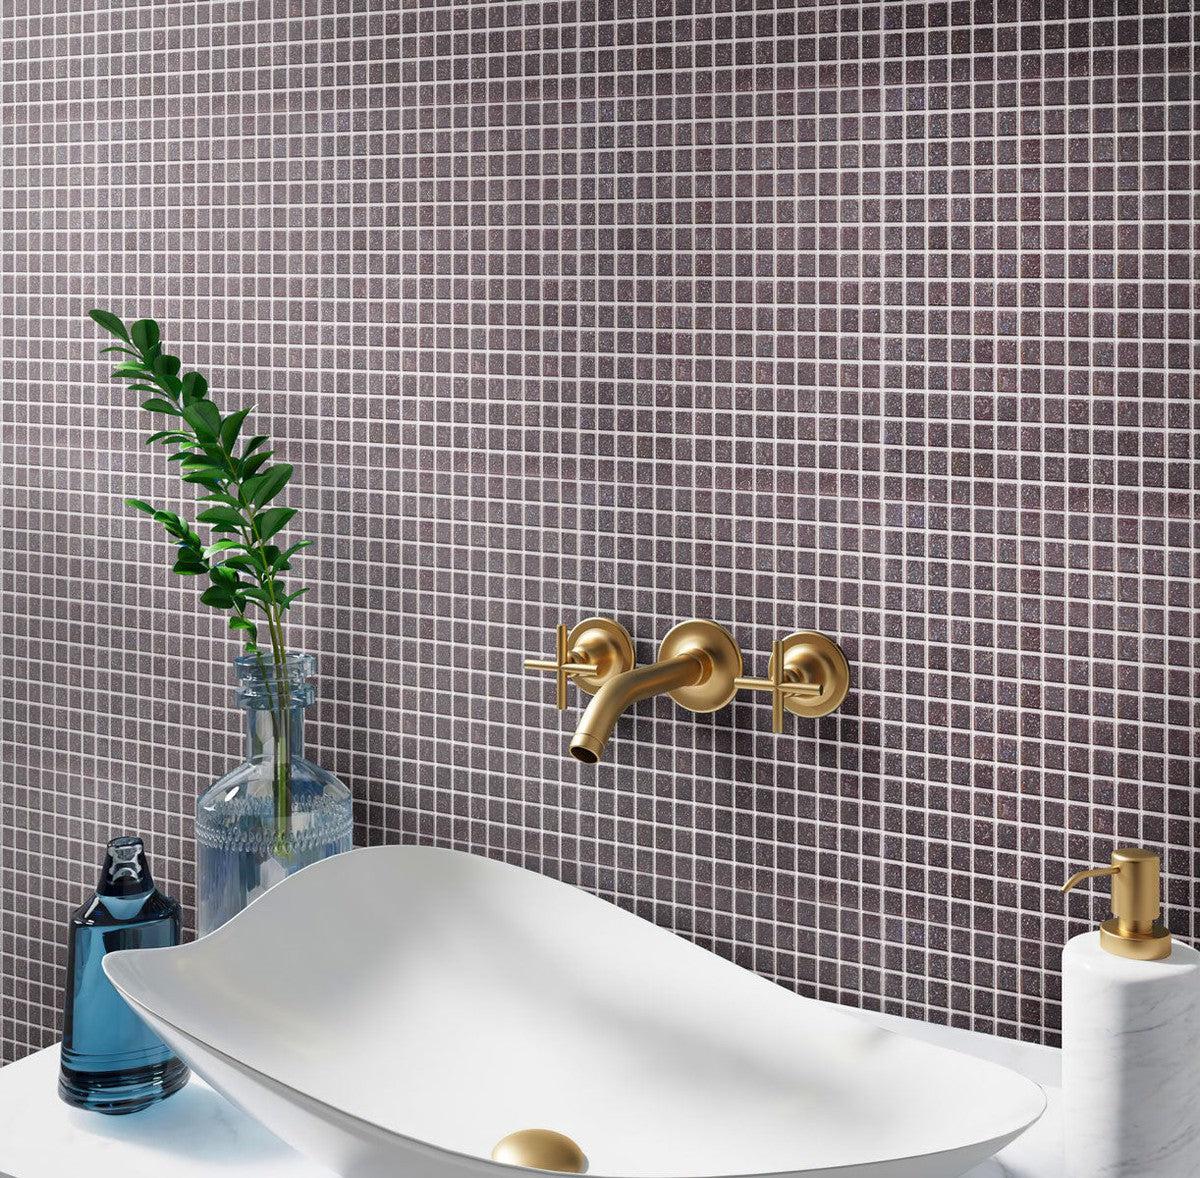 Speckled Charcoal Grey Squares Glass Pool Tile Bathroom Backsplash